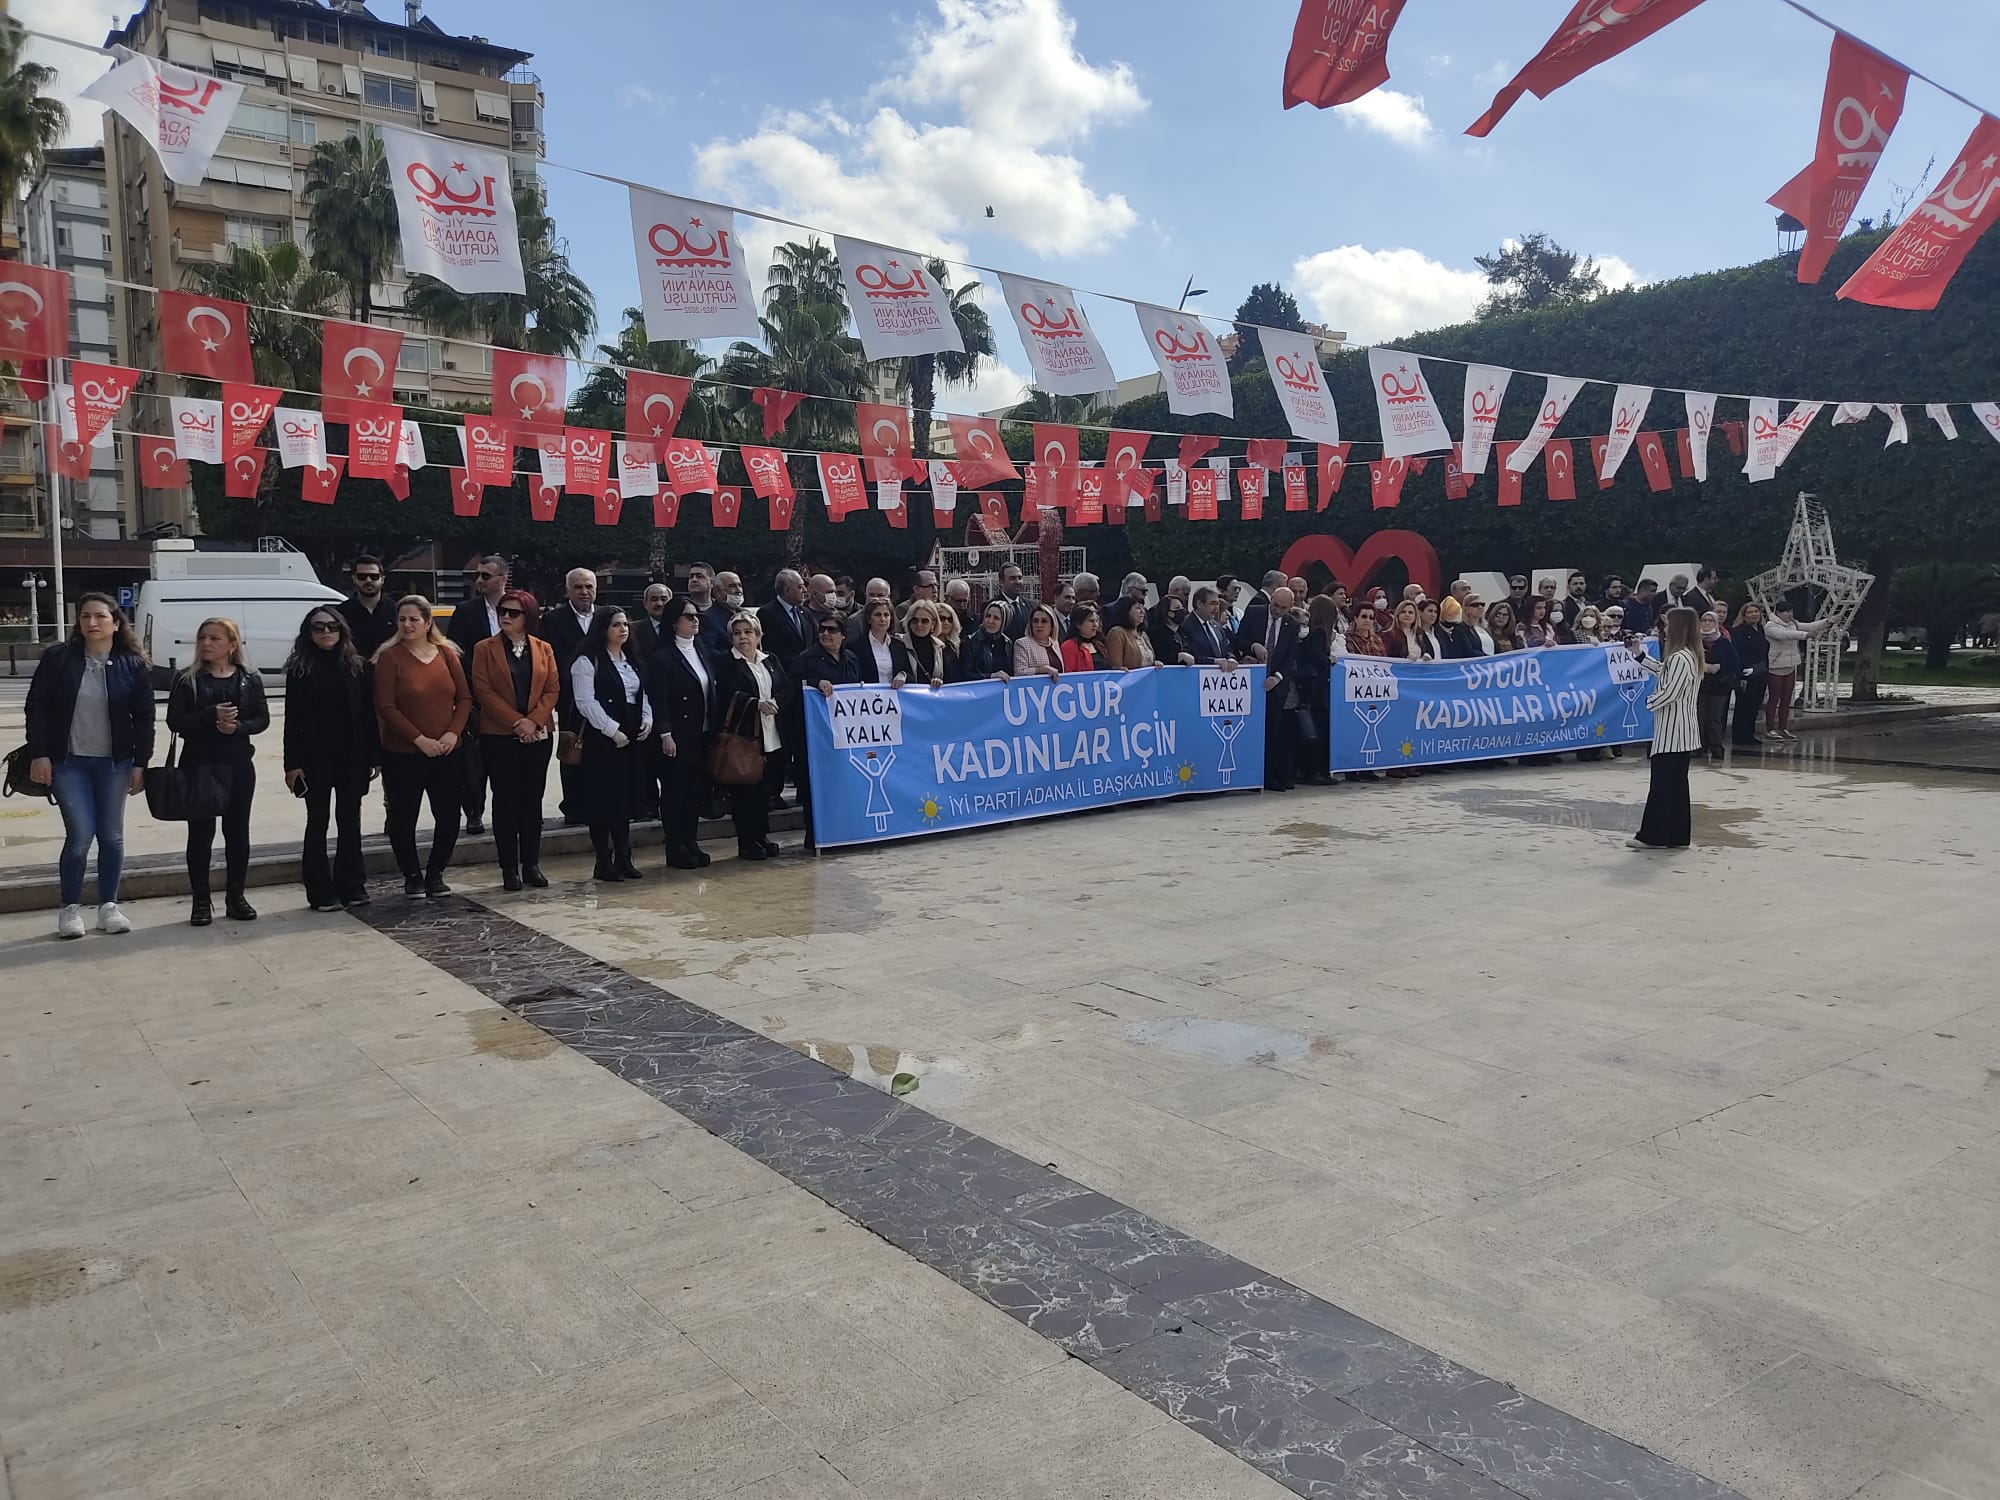 Hali, “Uygur Kadınları İçin Ayağa Kalk” Etkinliğini Organize Etti